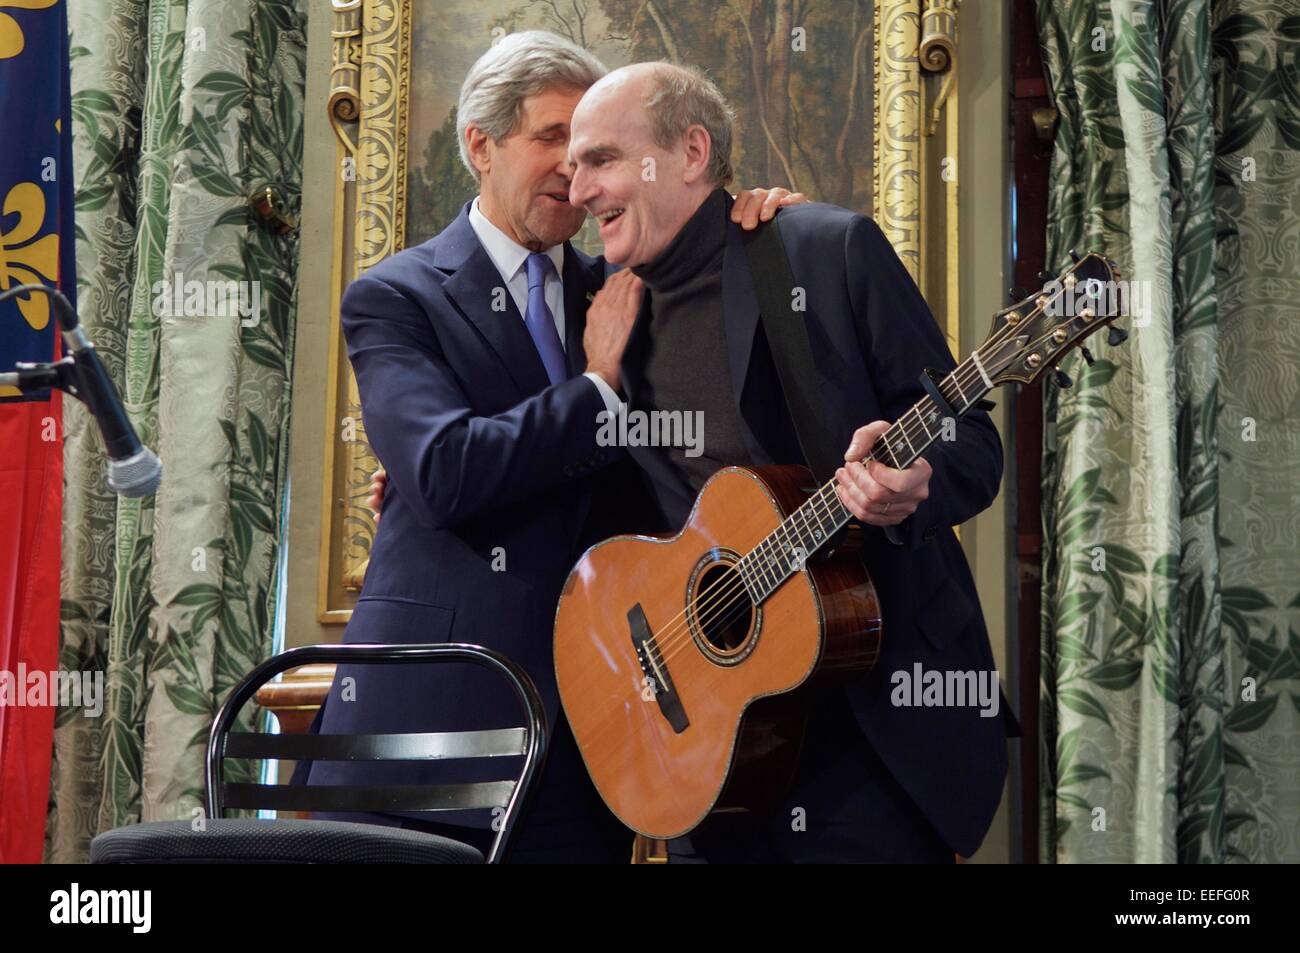 Il Segretario di Stato americano John Kerry abbraccia il cantante James Taylor dopo aver finito di cantare "Hai un amico' in corrispondenza di un evento a Parigi City Hall di onorare le vittime degli attacchi terroristici nella capitale francese 16 gennaio 2015 a Parigi, Francia. Foto Stock